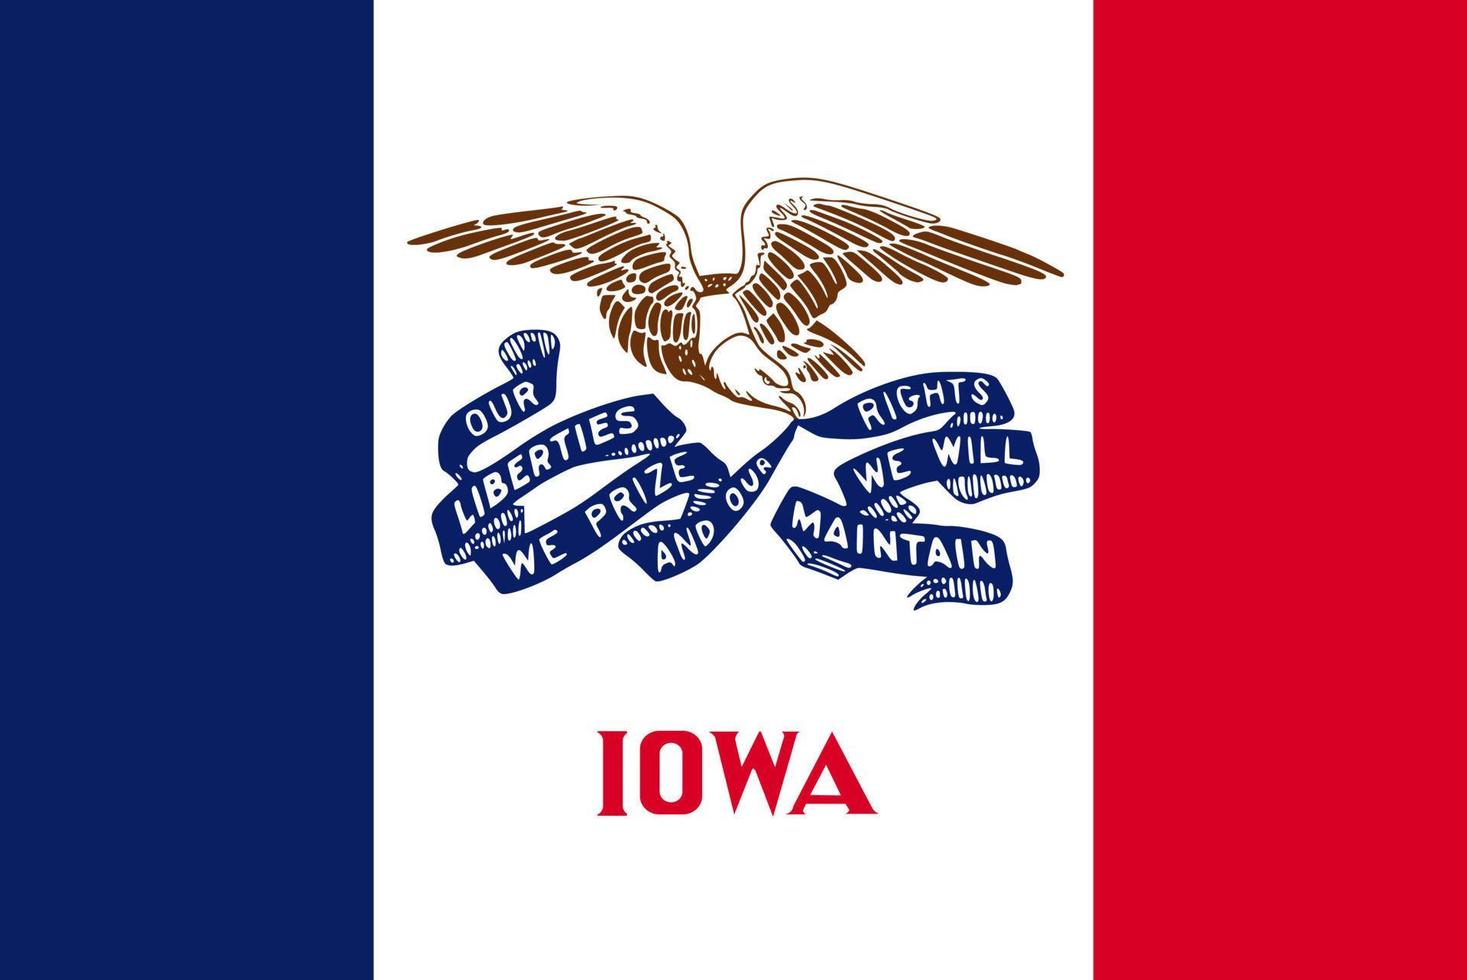 Iowa staat vlag. vector illustratie.